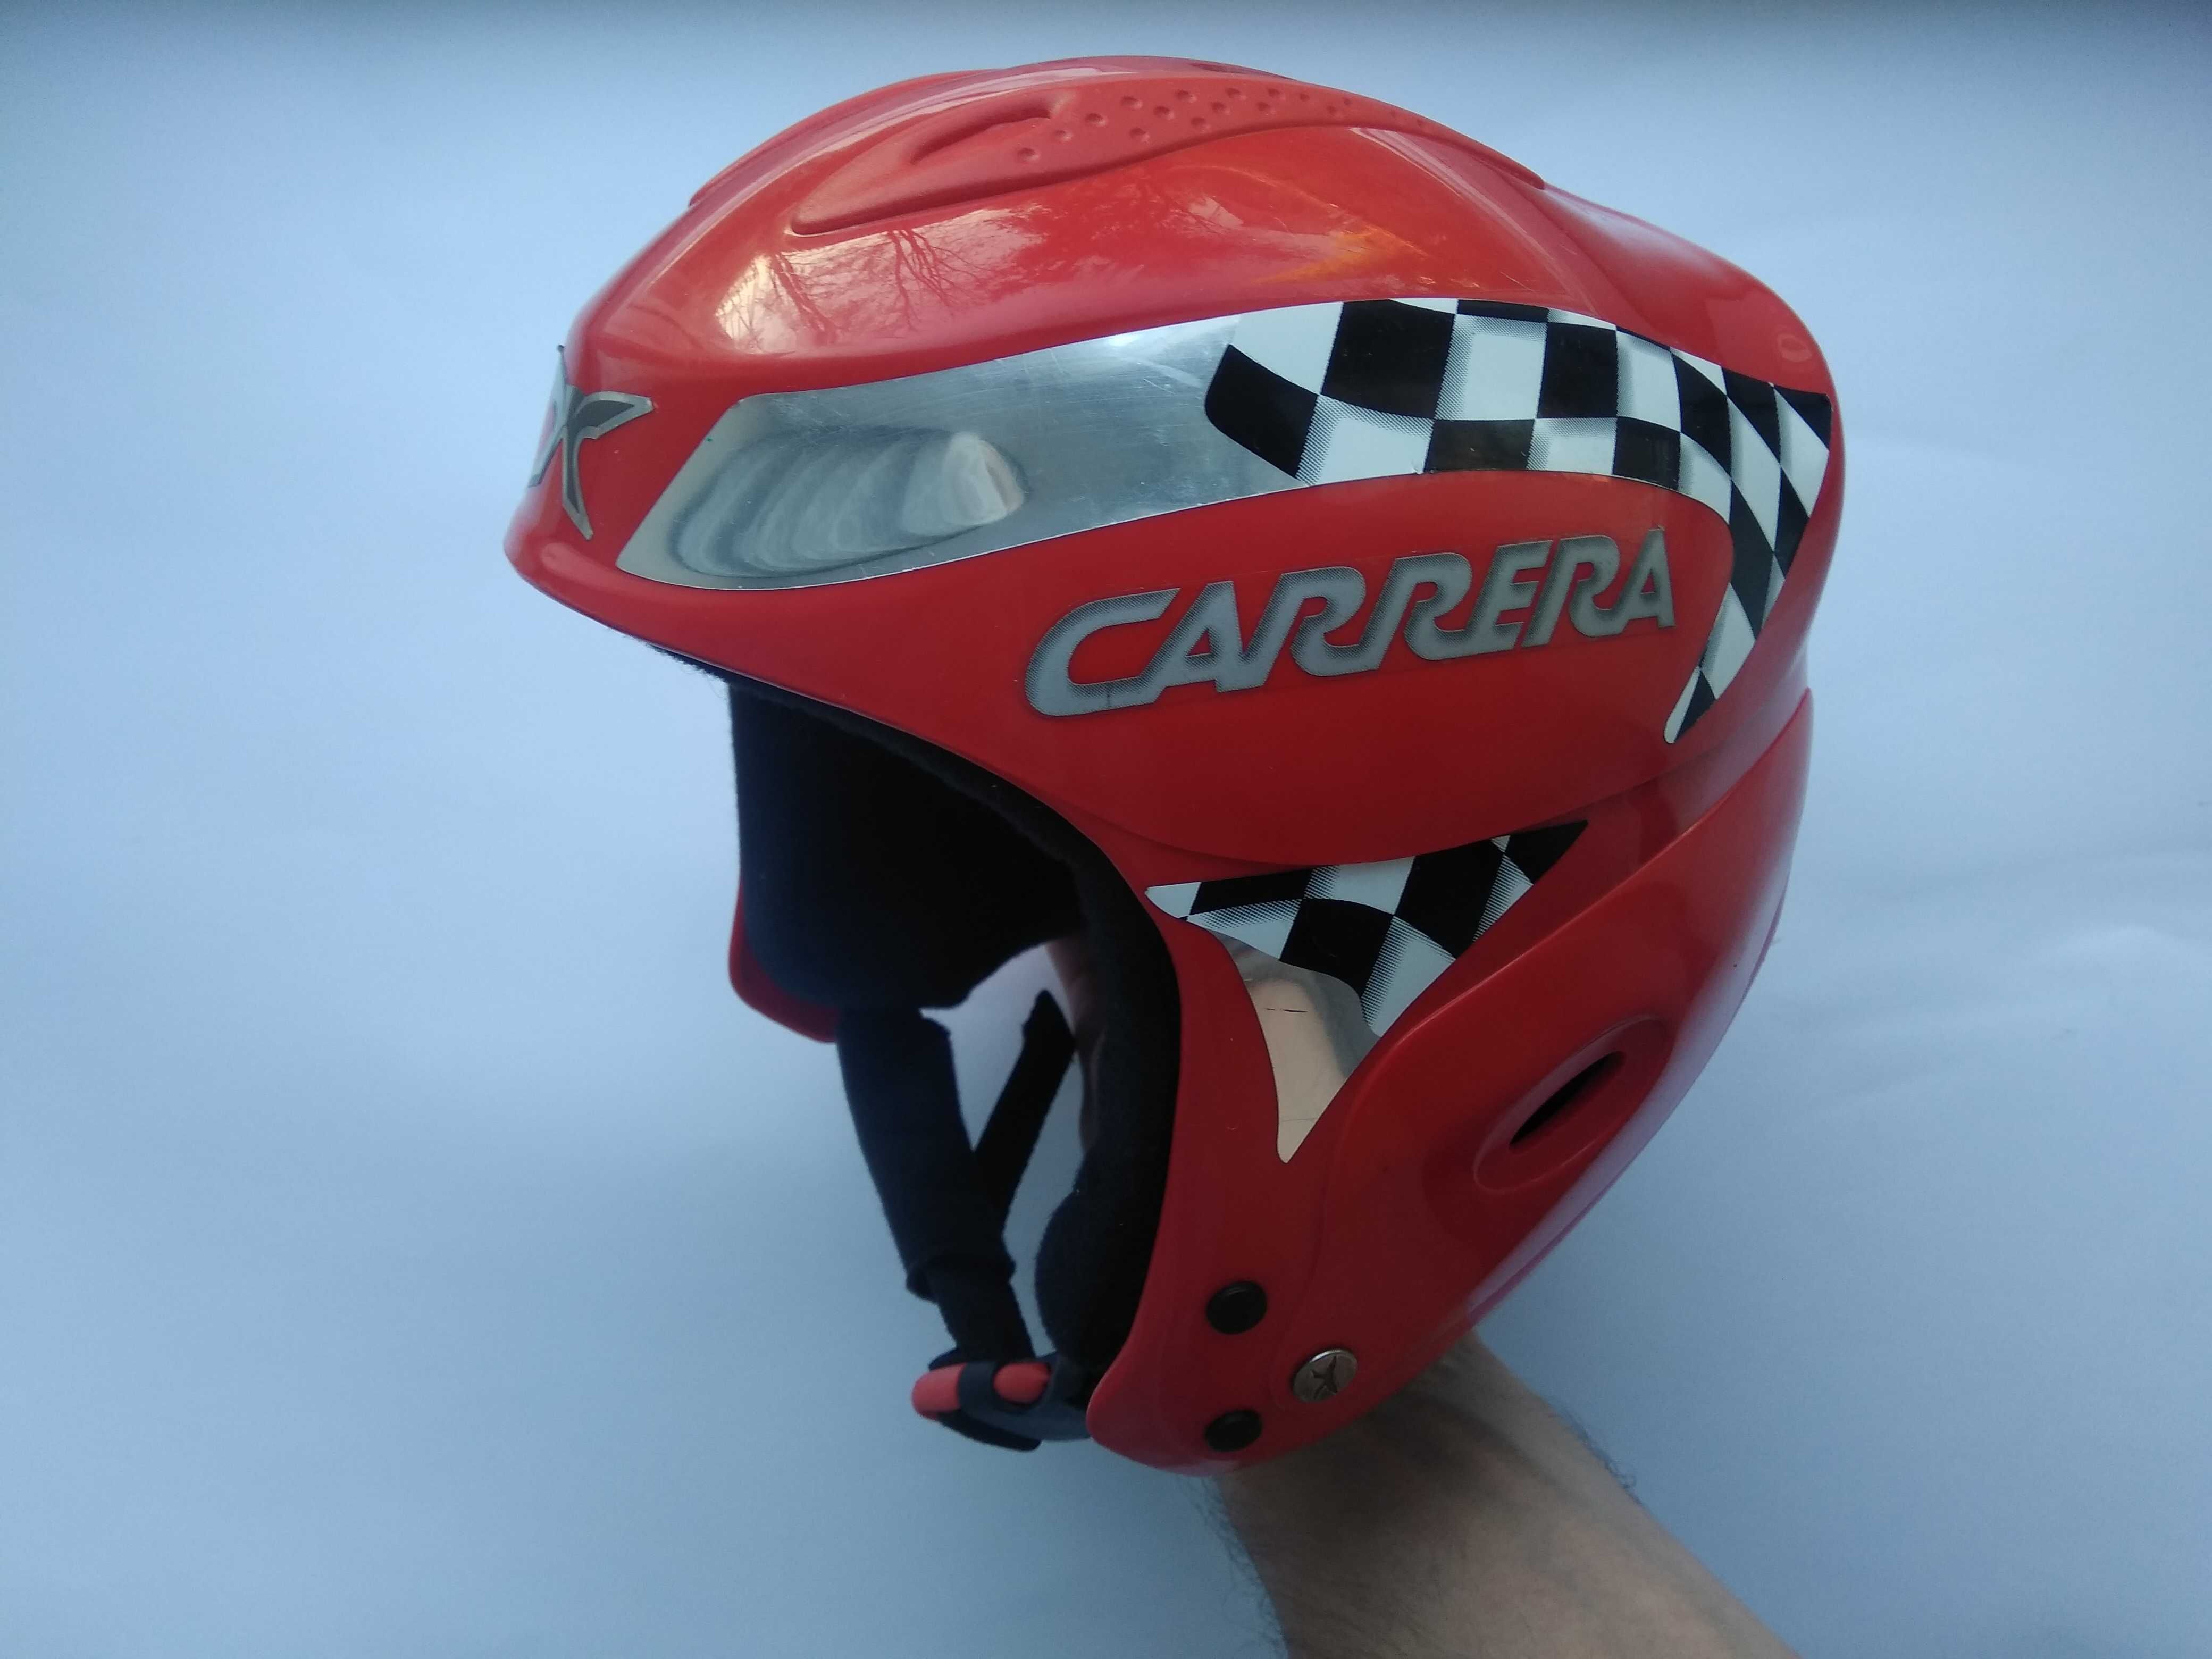 Горнолыжный сноубордический шлем Carrera, размер S 55-56см, Италия